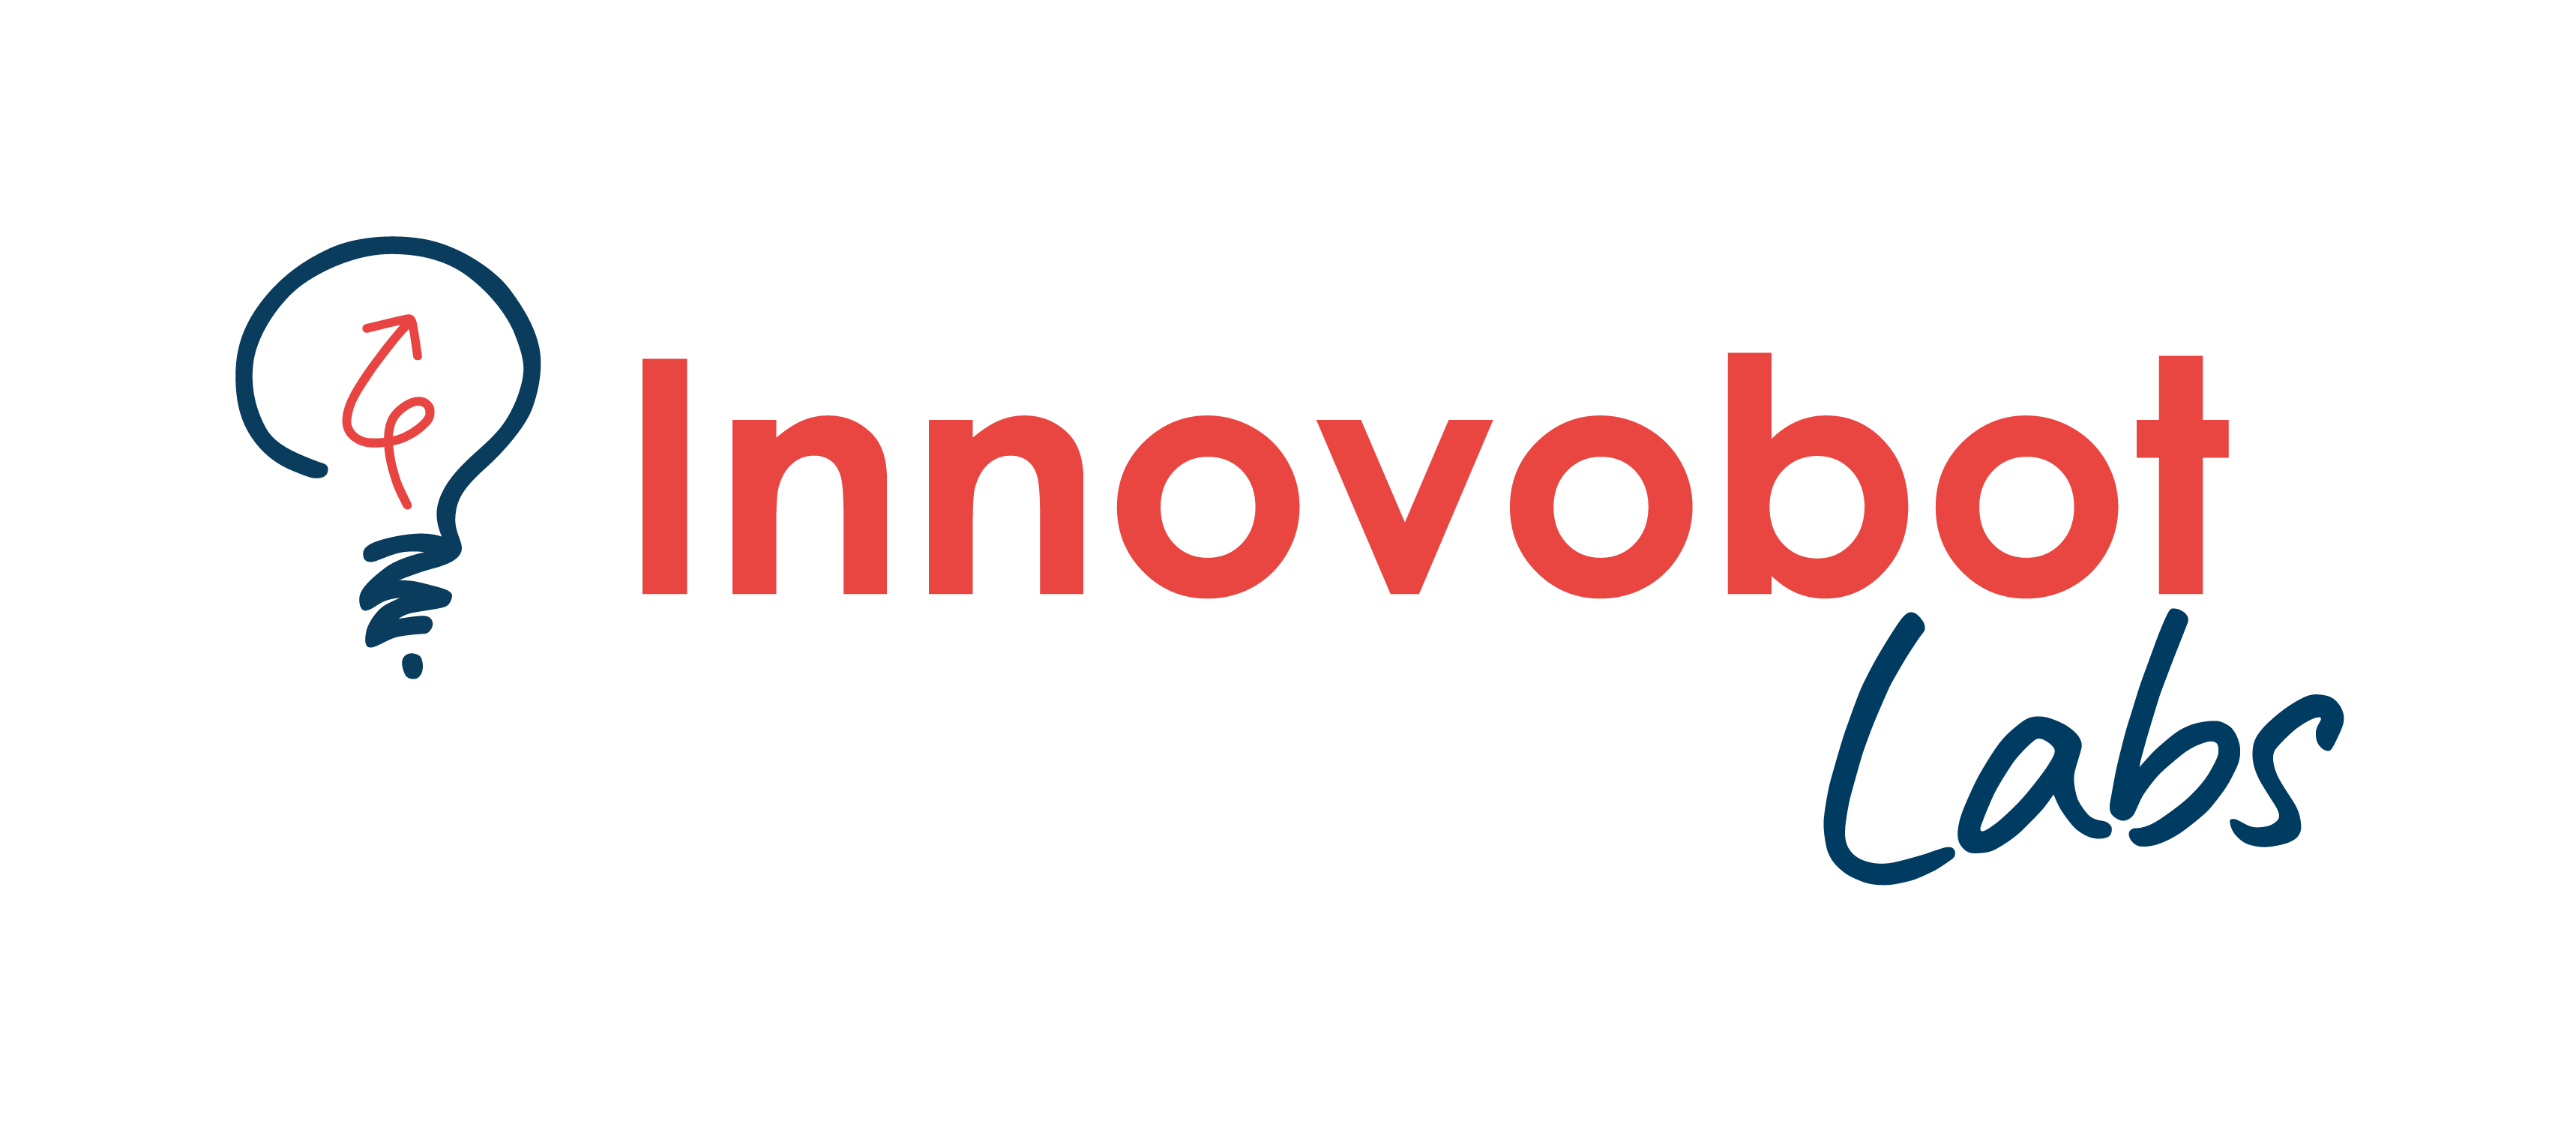 Innovobot-logo-horizontal-1